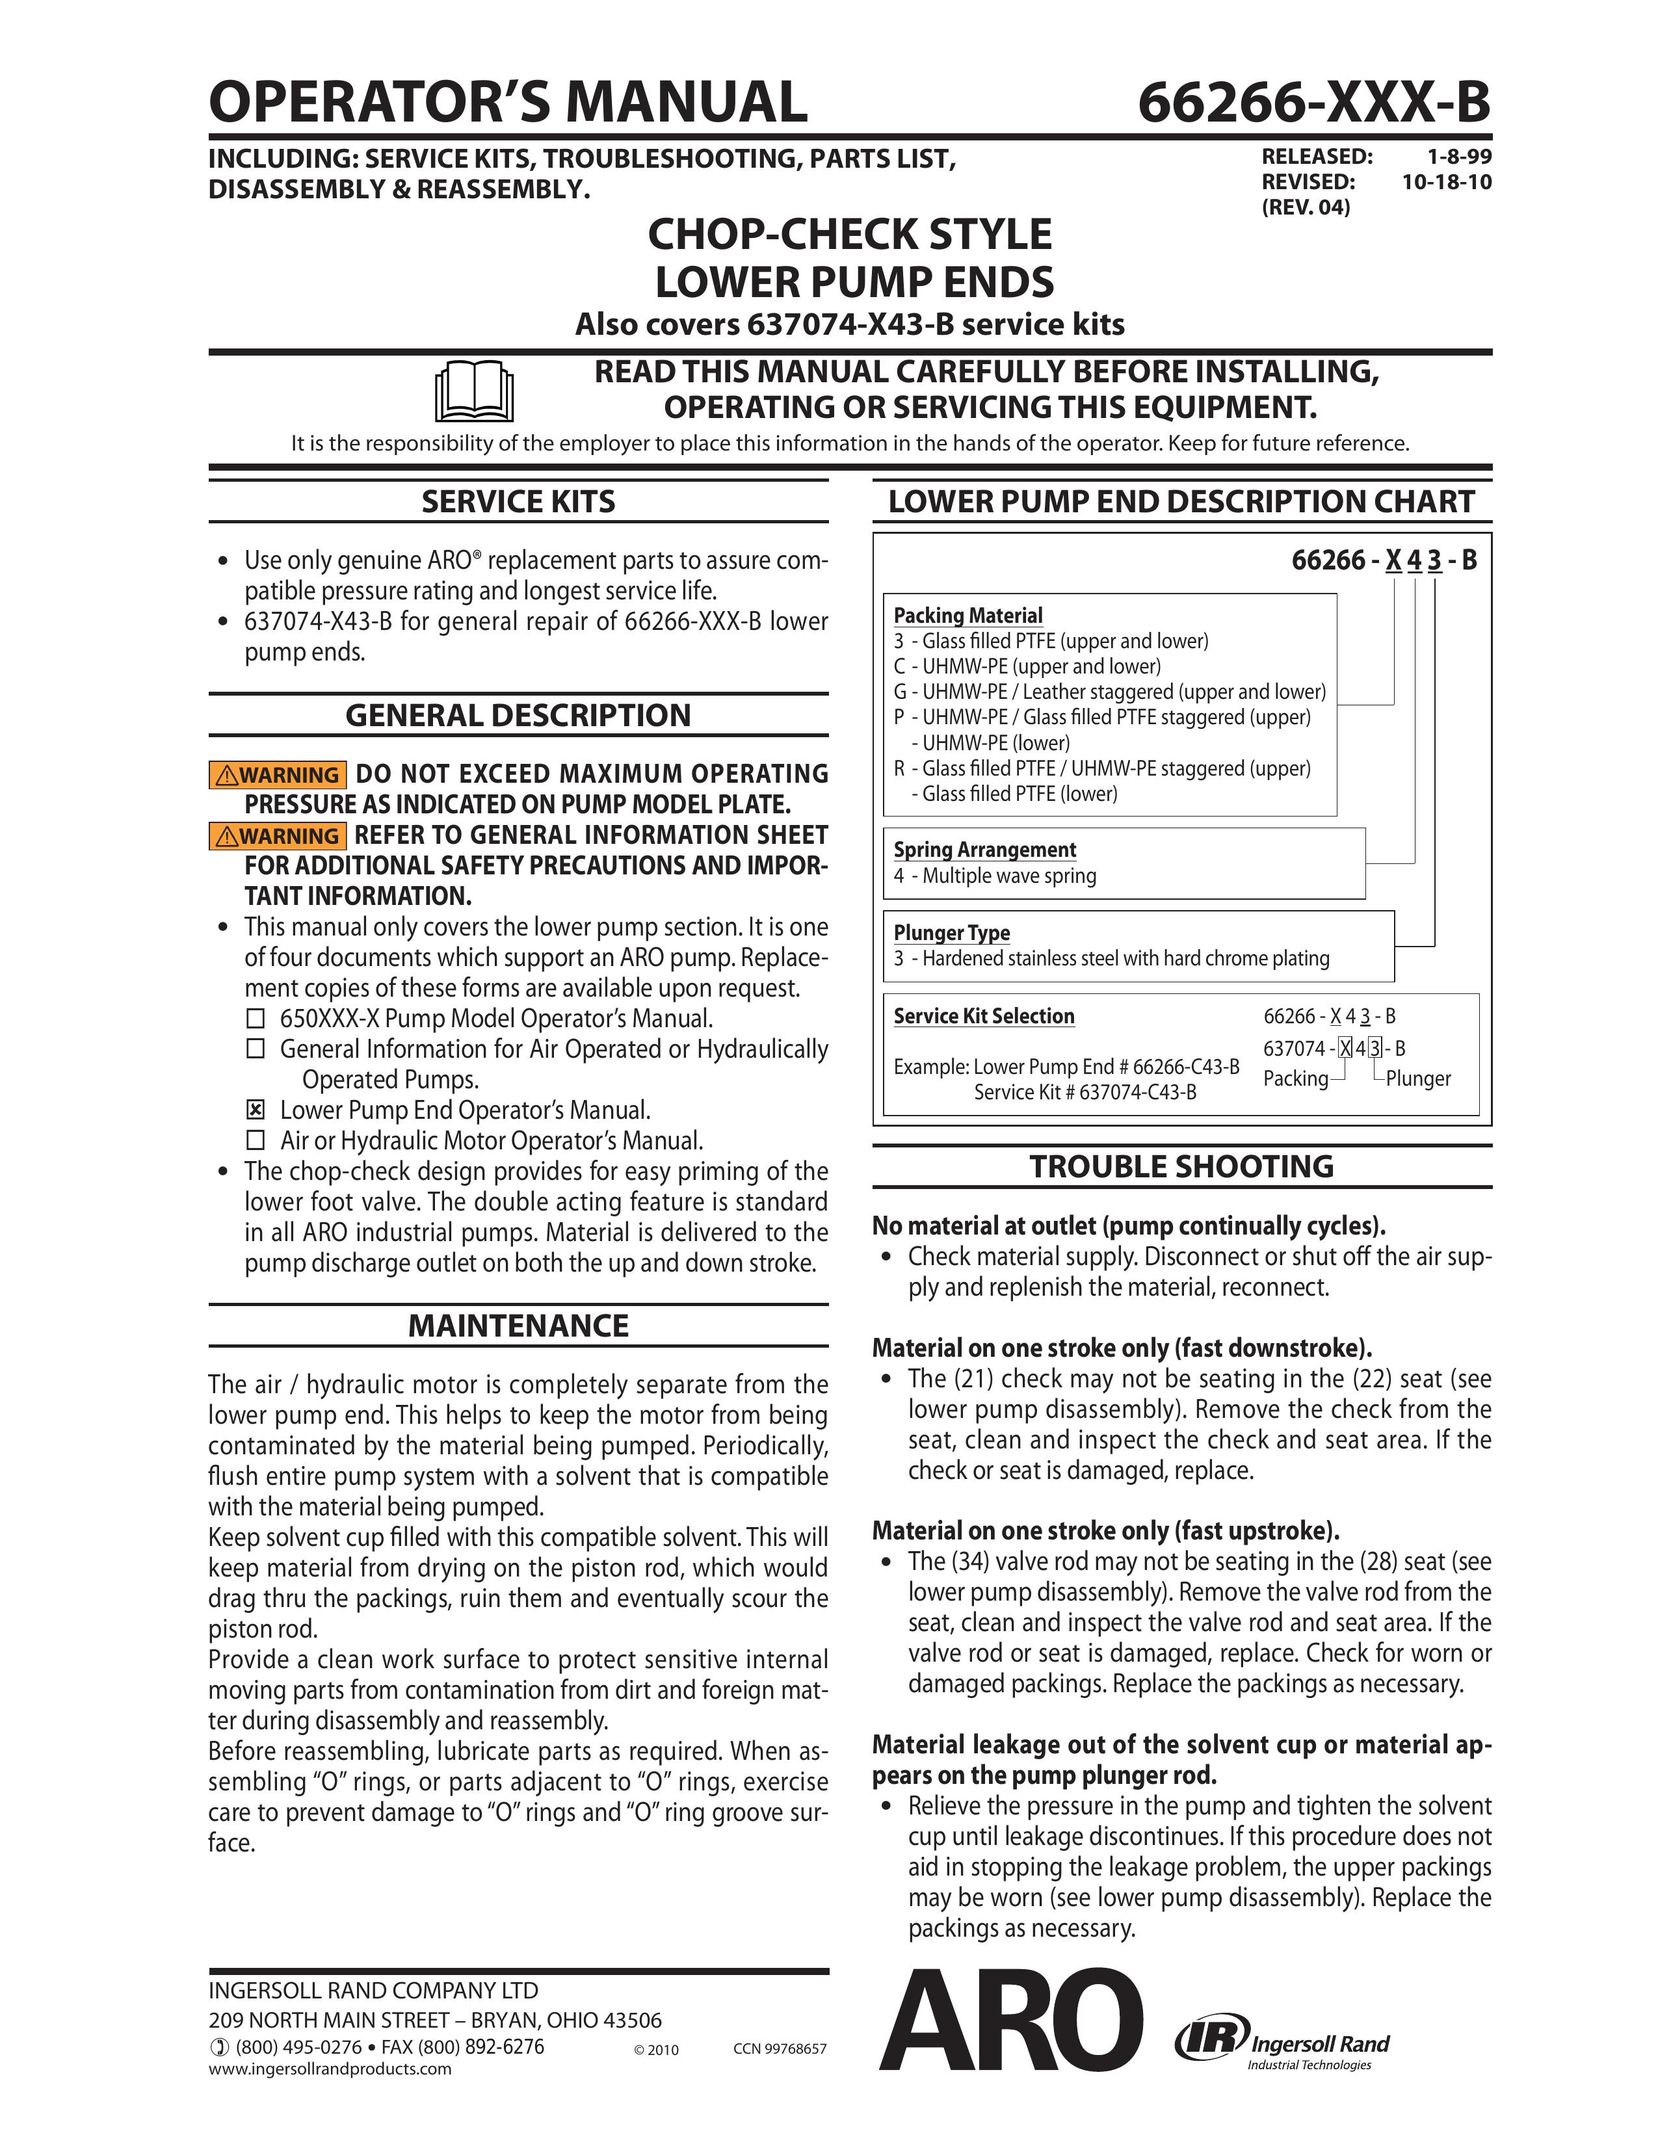 Ingersoll-Rand 66266-XXX-B Water Pump User Manual